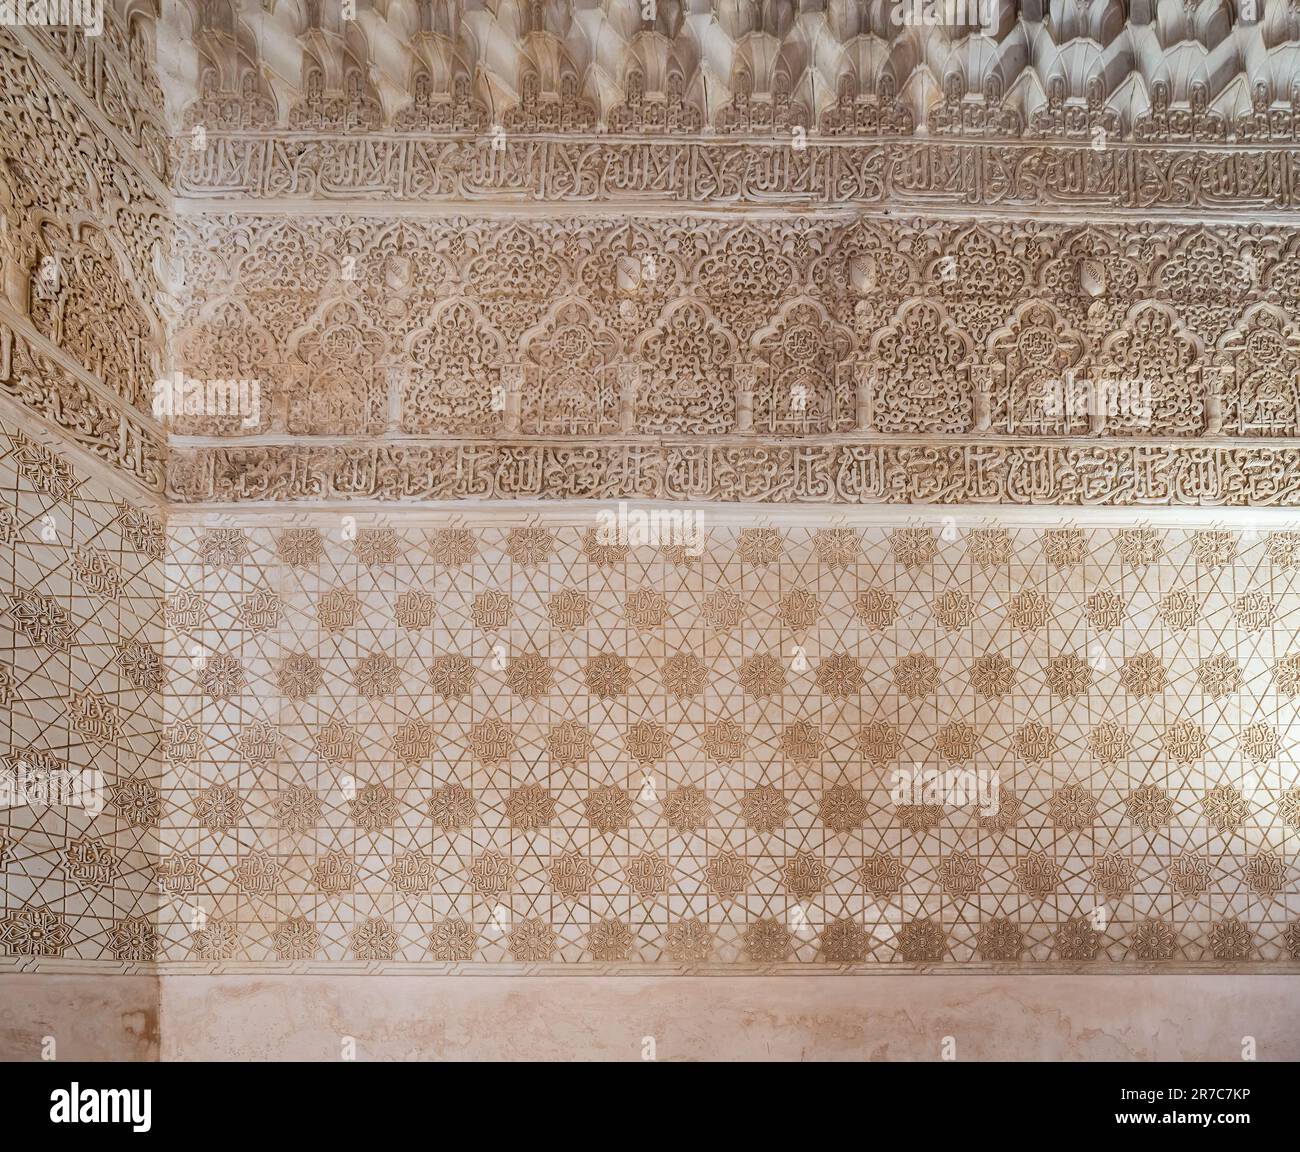 Mur en stuc à l'intérieur du palais Comares aux palais Nasrides de l'Alhambra - Grenade, Andalousie, Espagne Banque D'Images